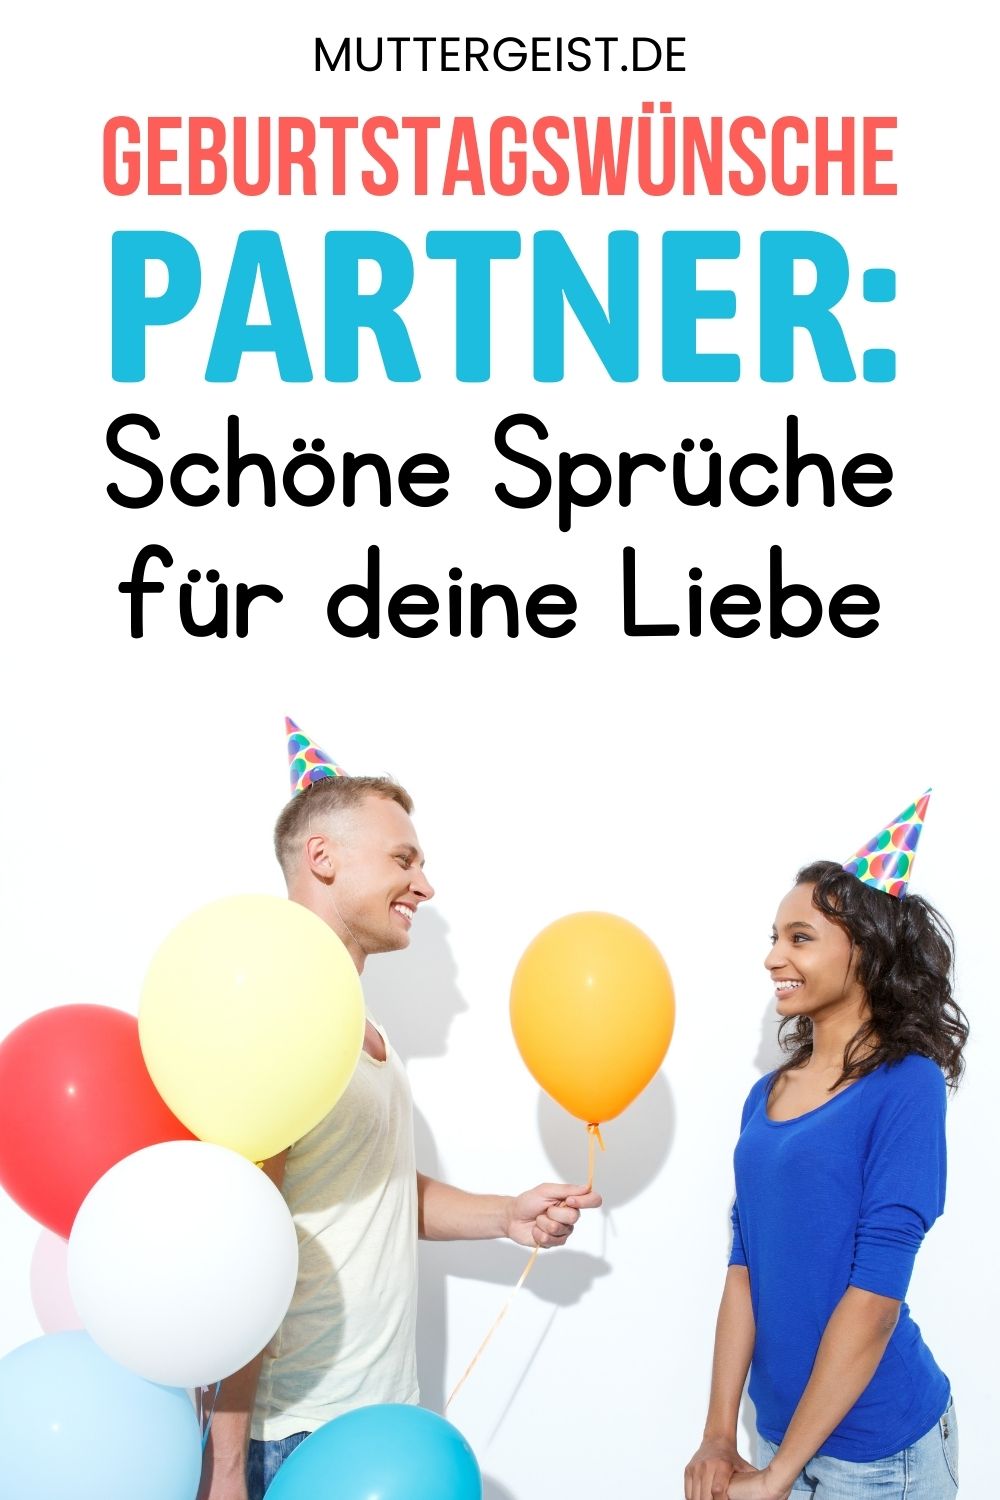 Geburtstagswünsche Partner – Schöne Sprüche für deine Liebe Pinterest